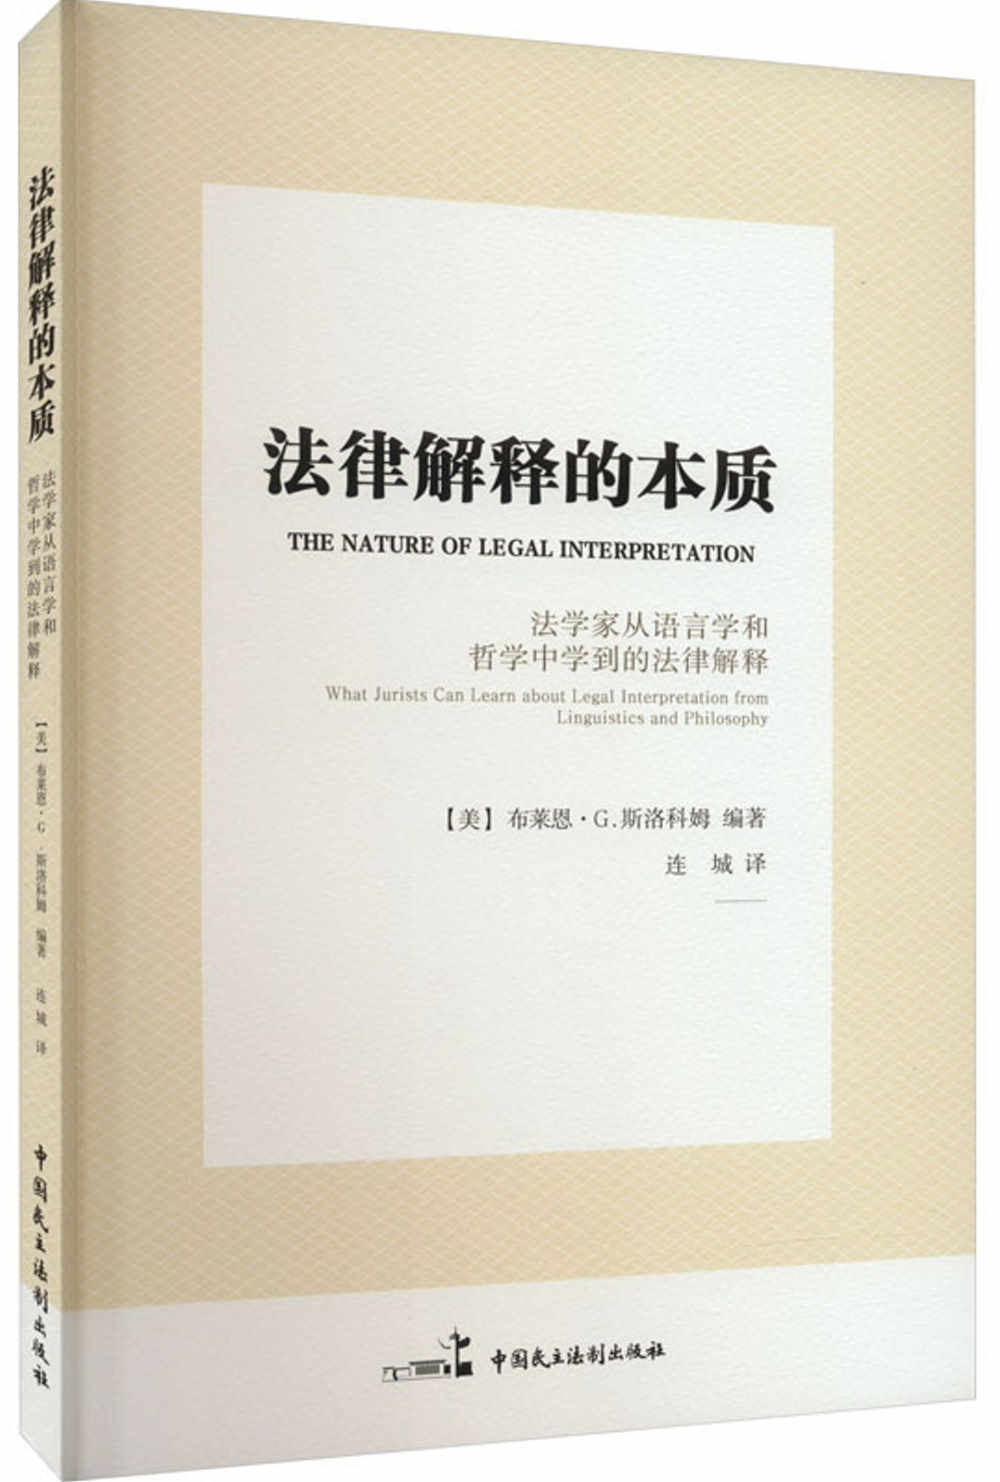 法律解釋的本質：法學家從語言學和哲學中學到的法律解釋